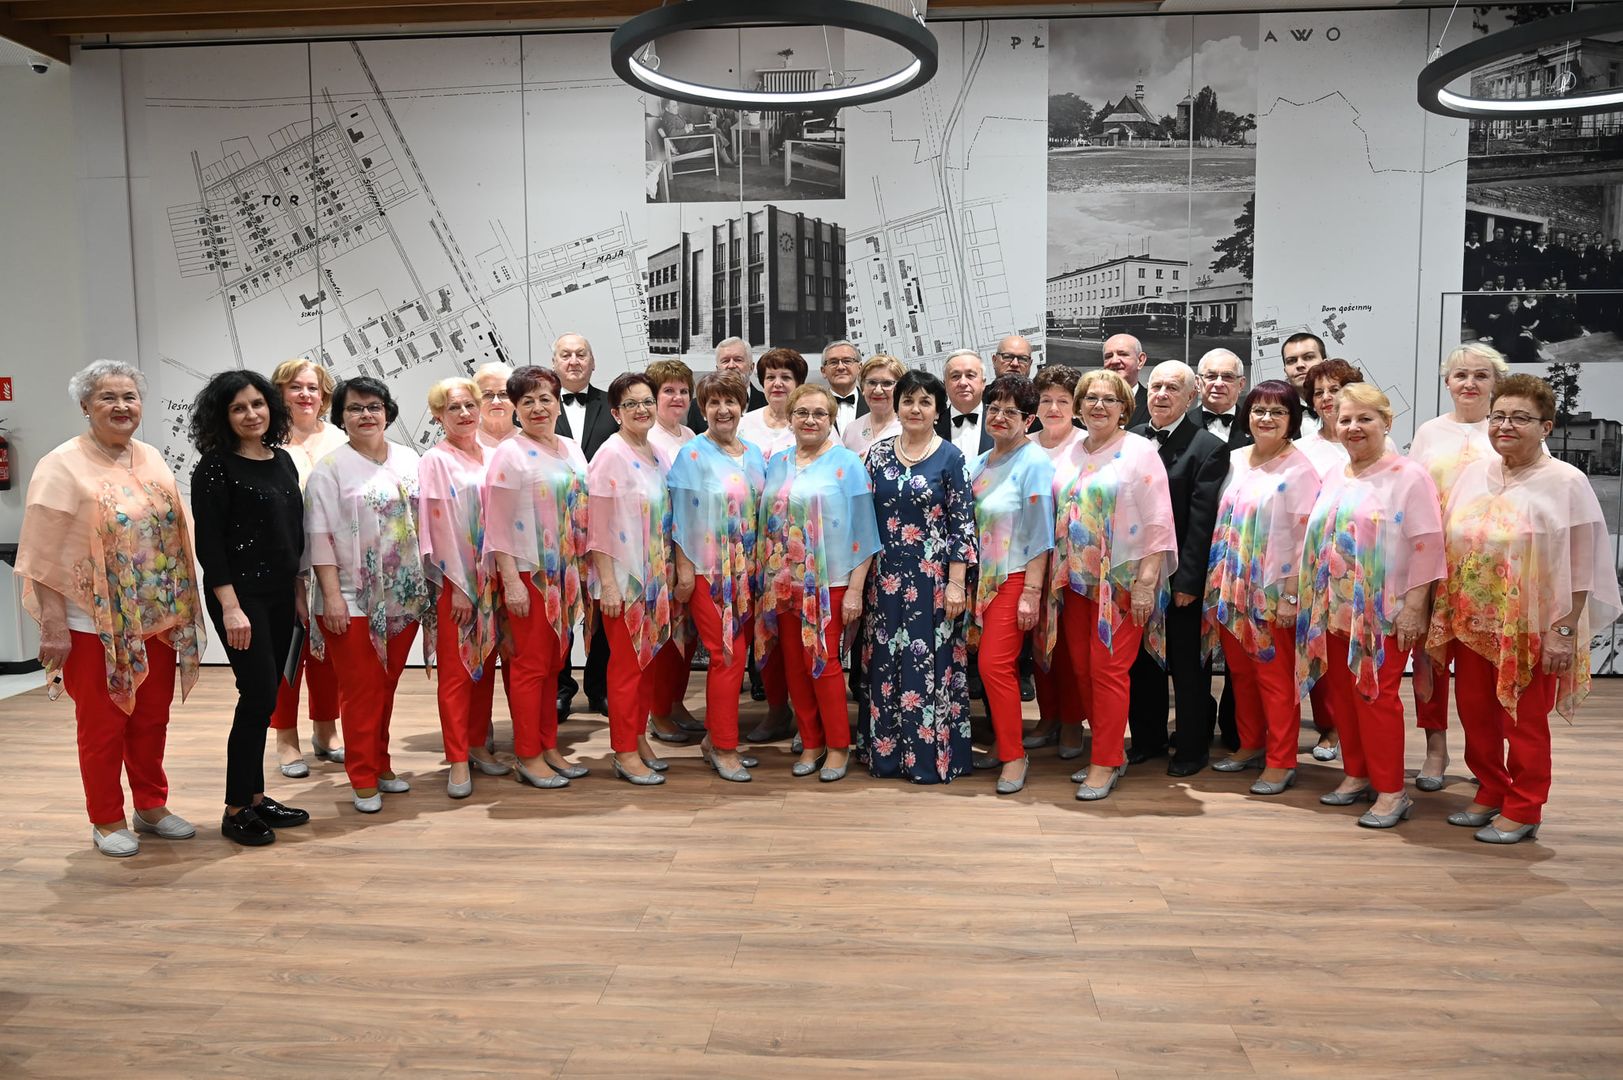 Chór Gaude Vitae wystąpił w Koncercie Walentynkowym w Centrum Aktywności Seniora w Stalowej Woli, w lutym 2022 r.